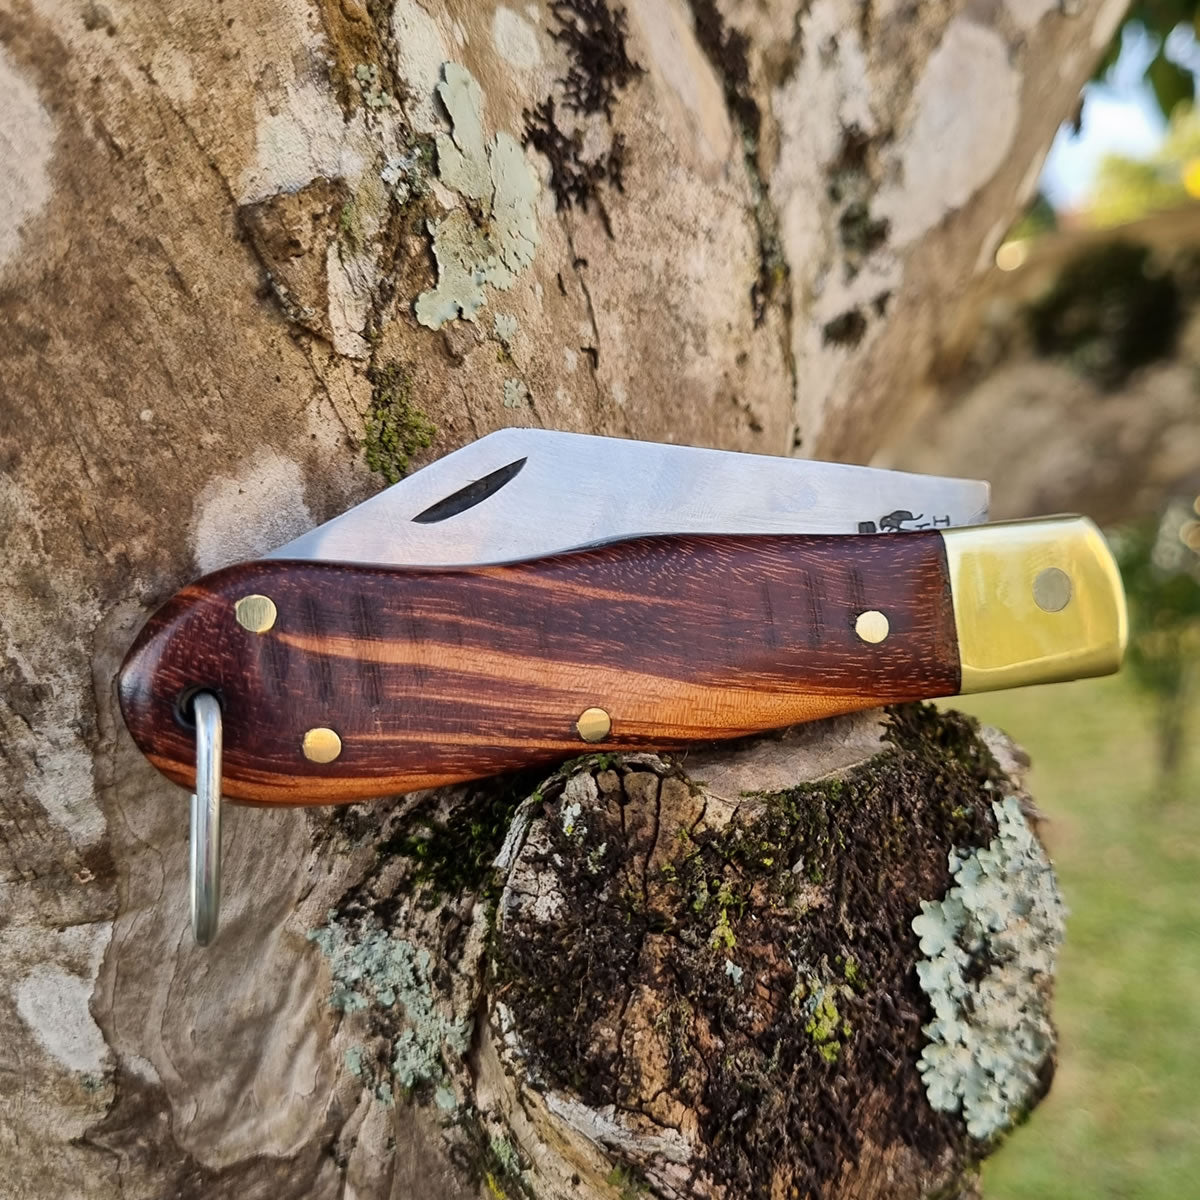 Canivete artesanal clássico Furbem modelo R3 em madeira e aço inox.